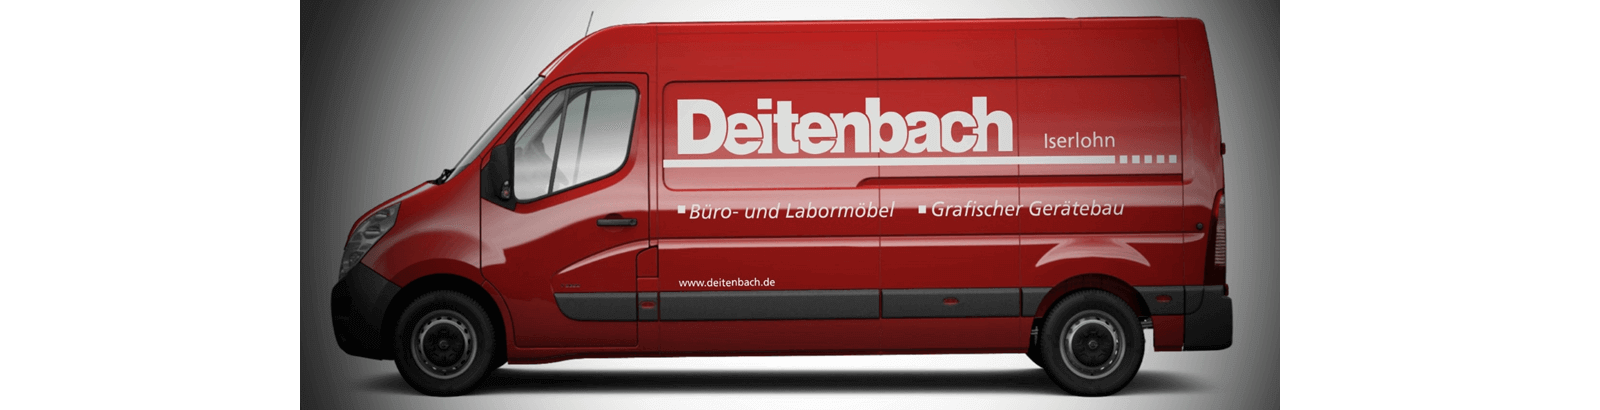 Service-Lieferfahrzeug von Deitenbach